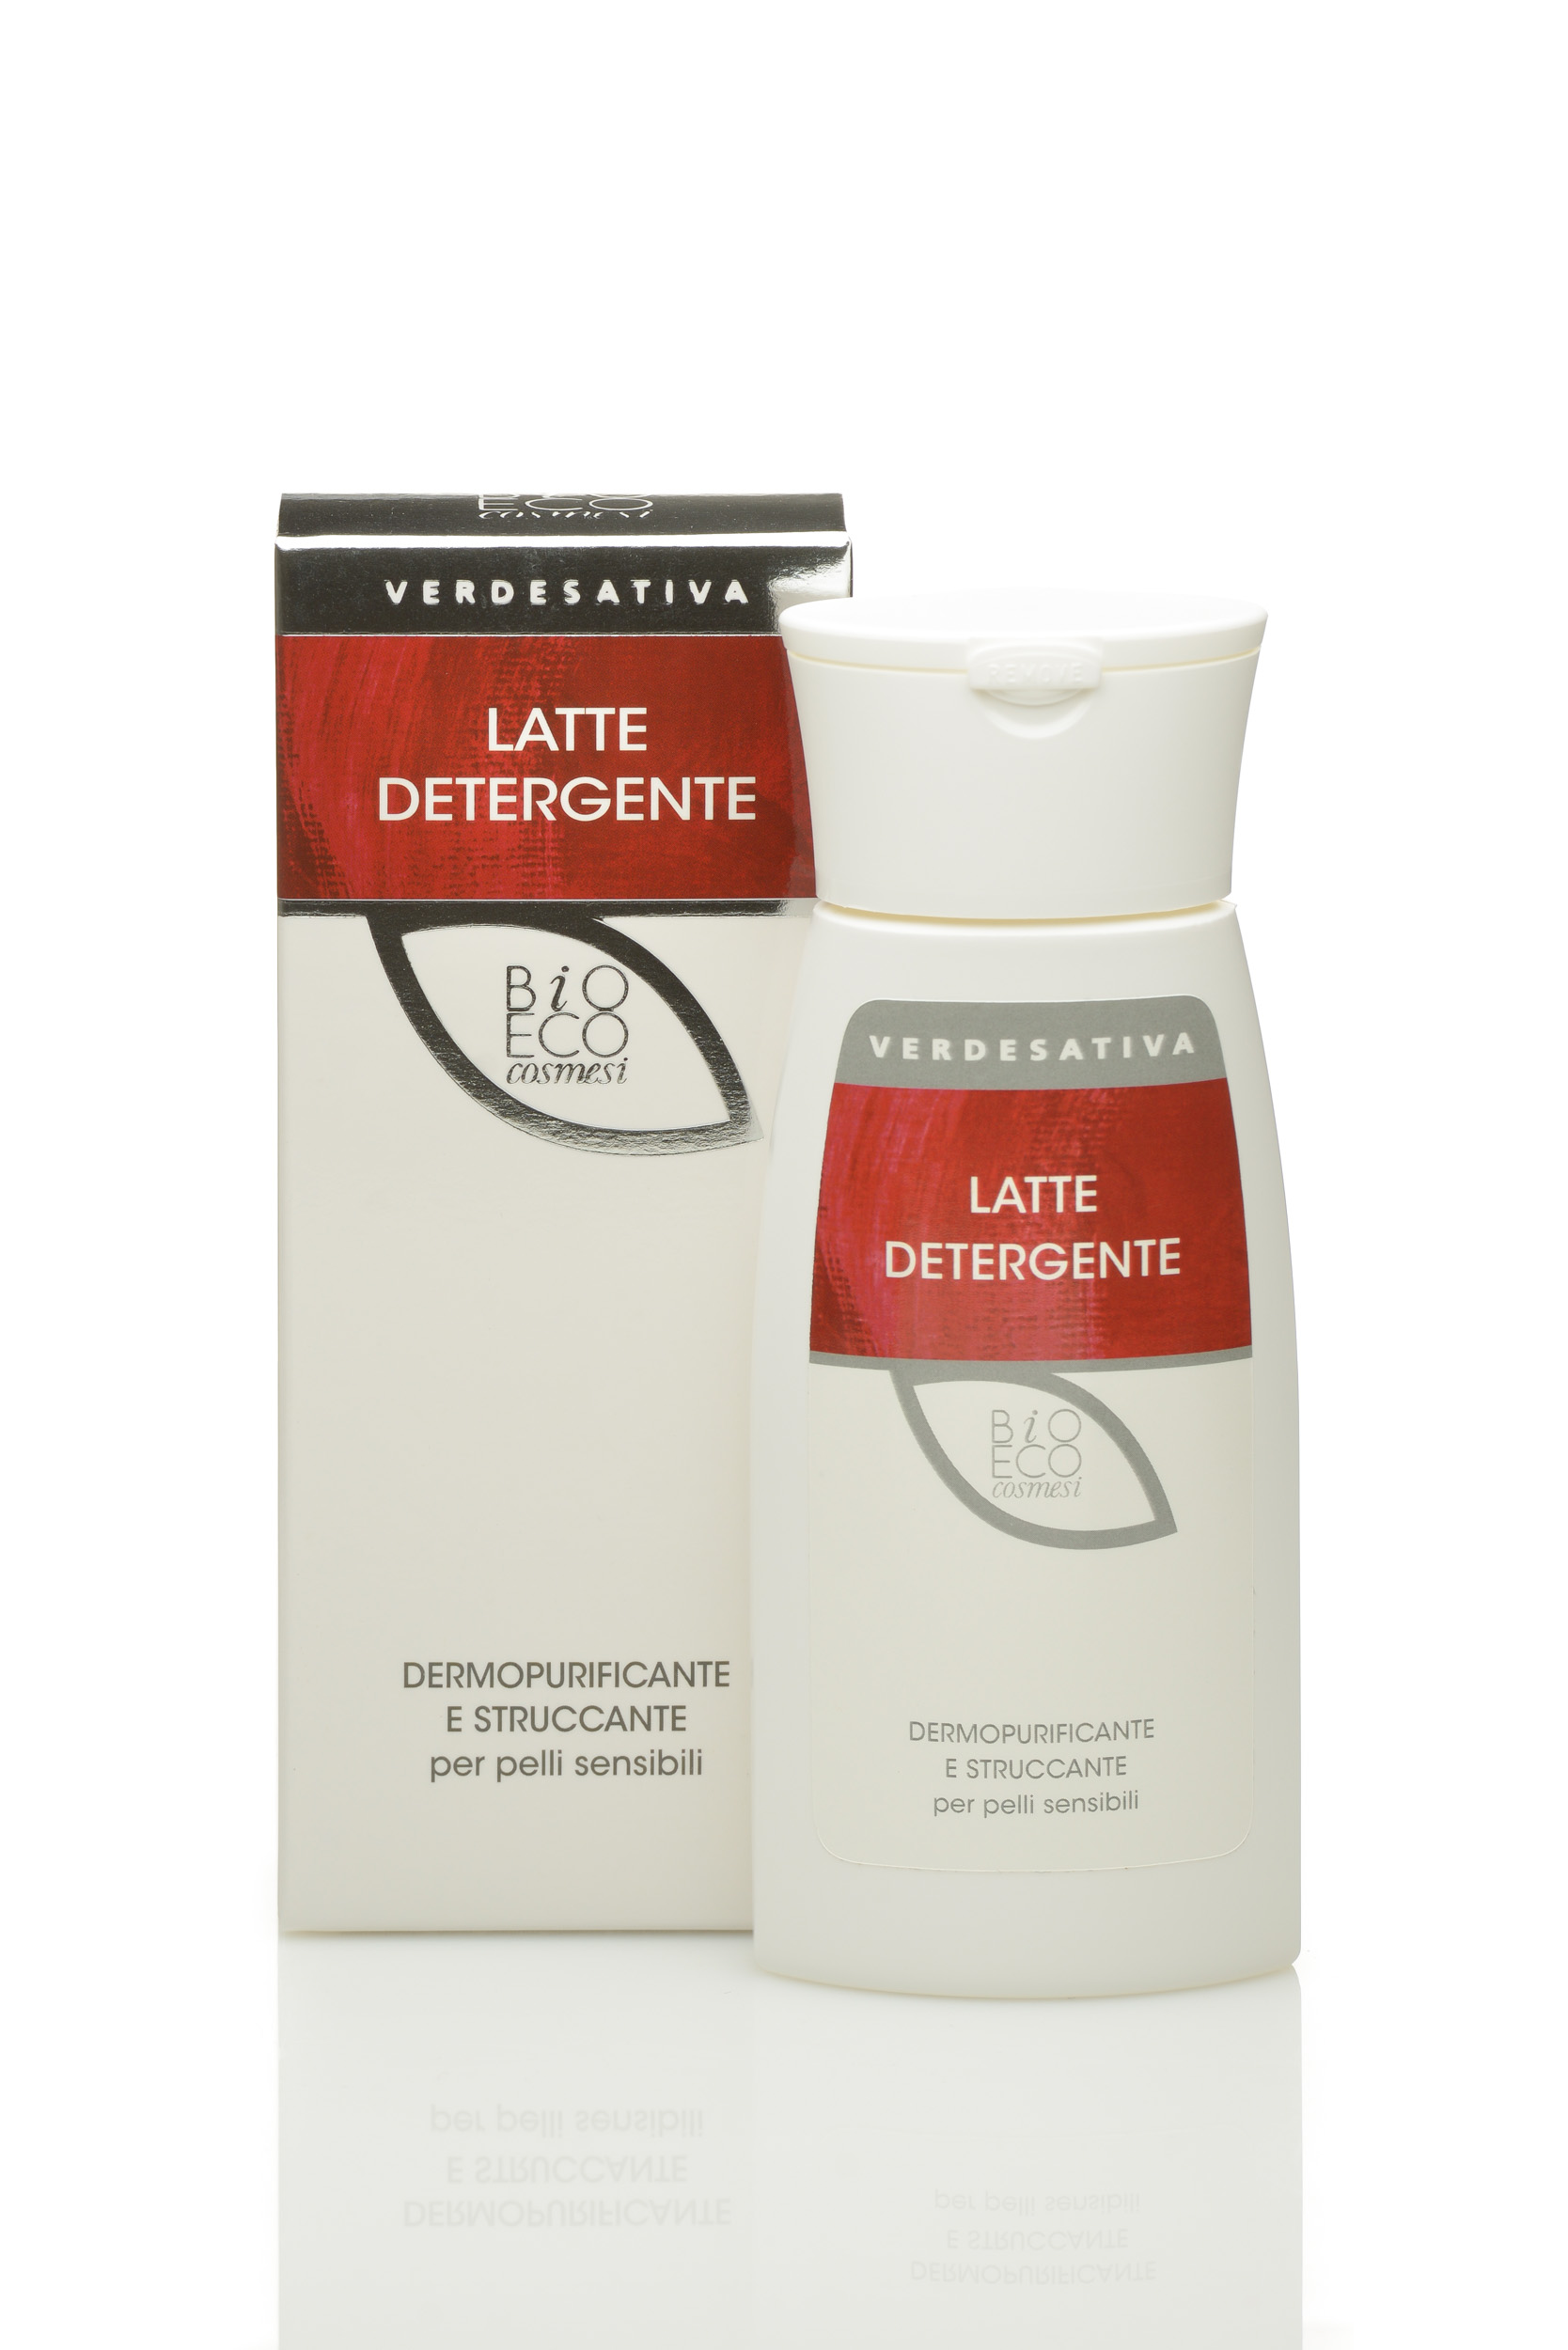 Latte Detergente Viso dermopurificante 100% naturale, per pelli sensibili 150g